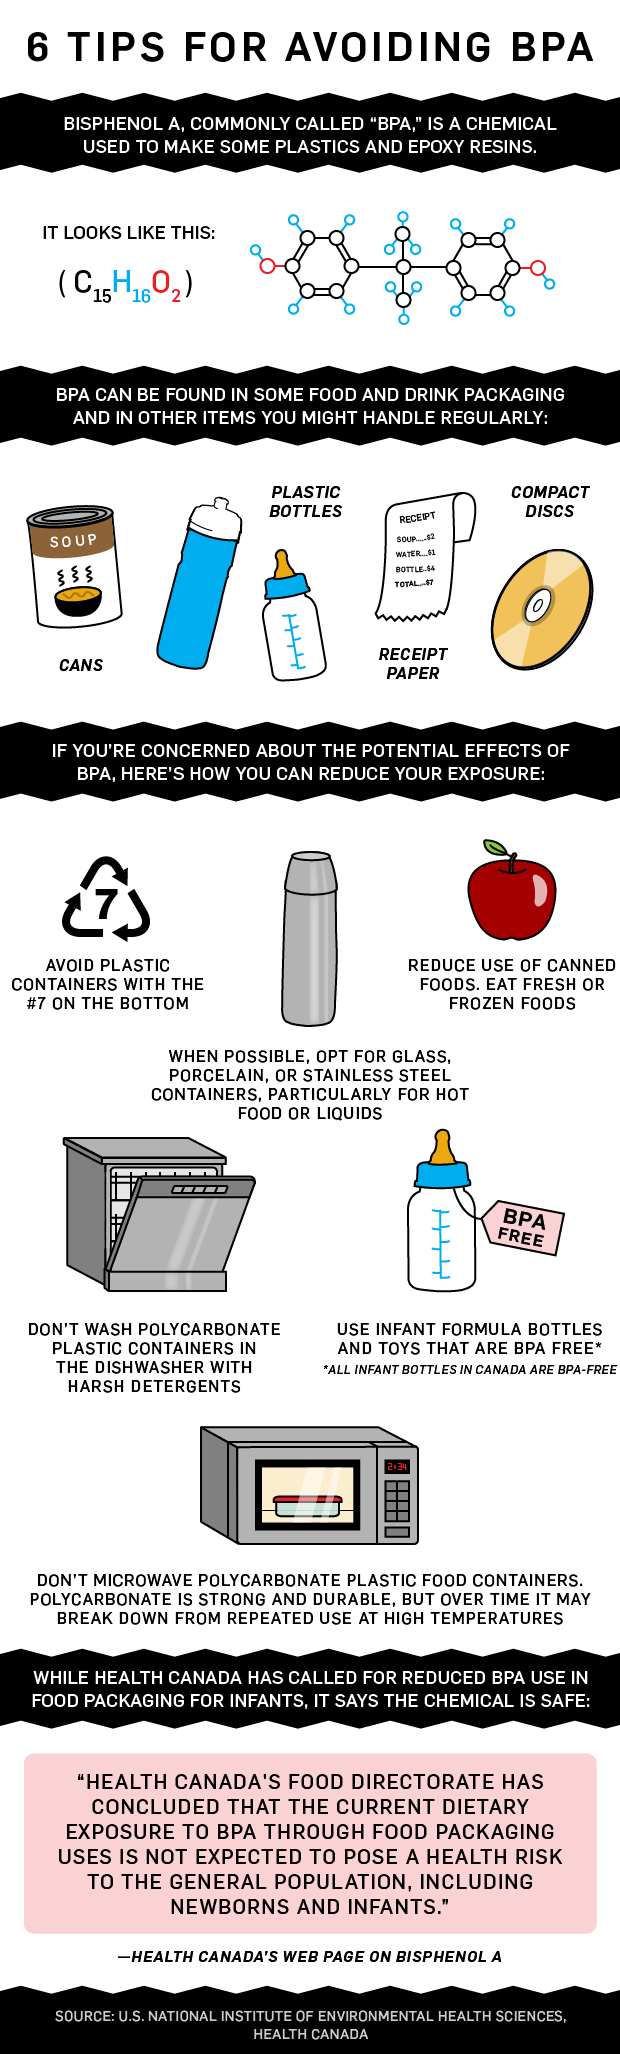 6 tips for avoiding BPA